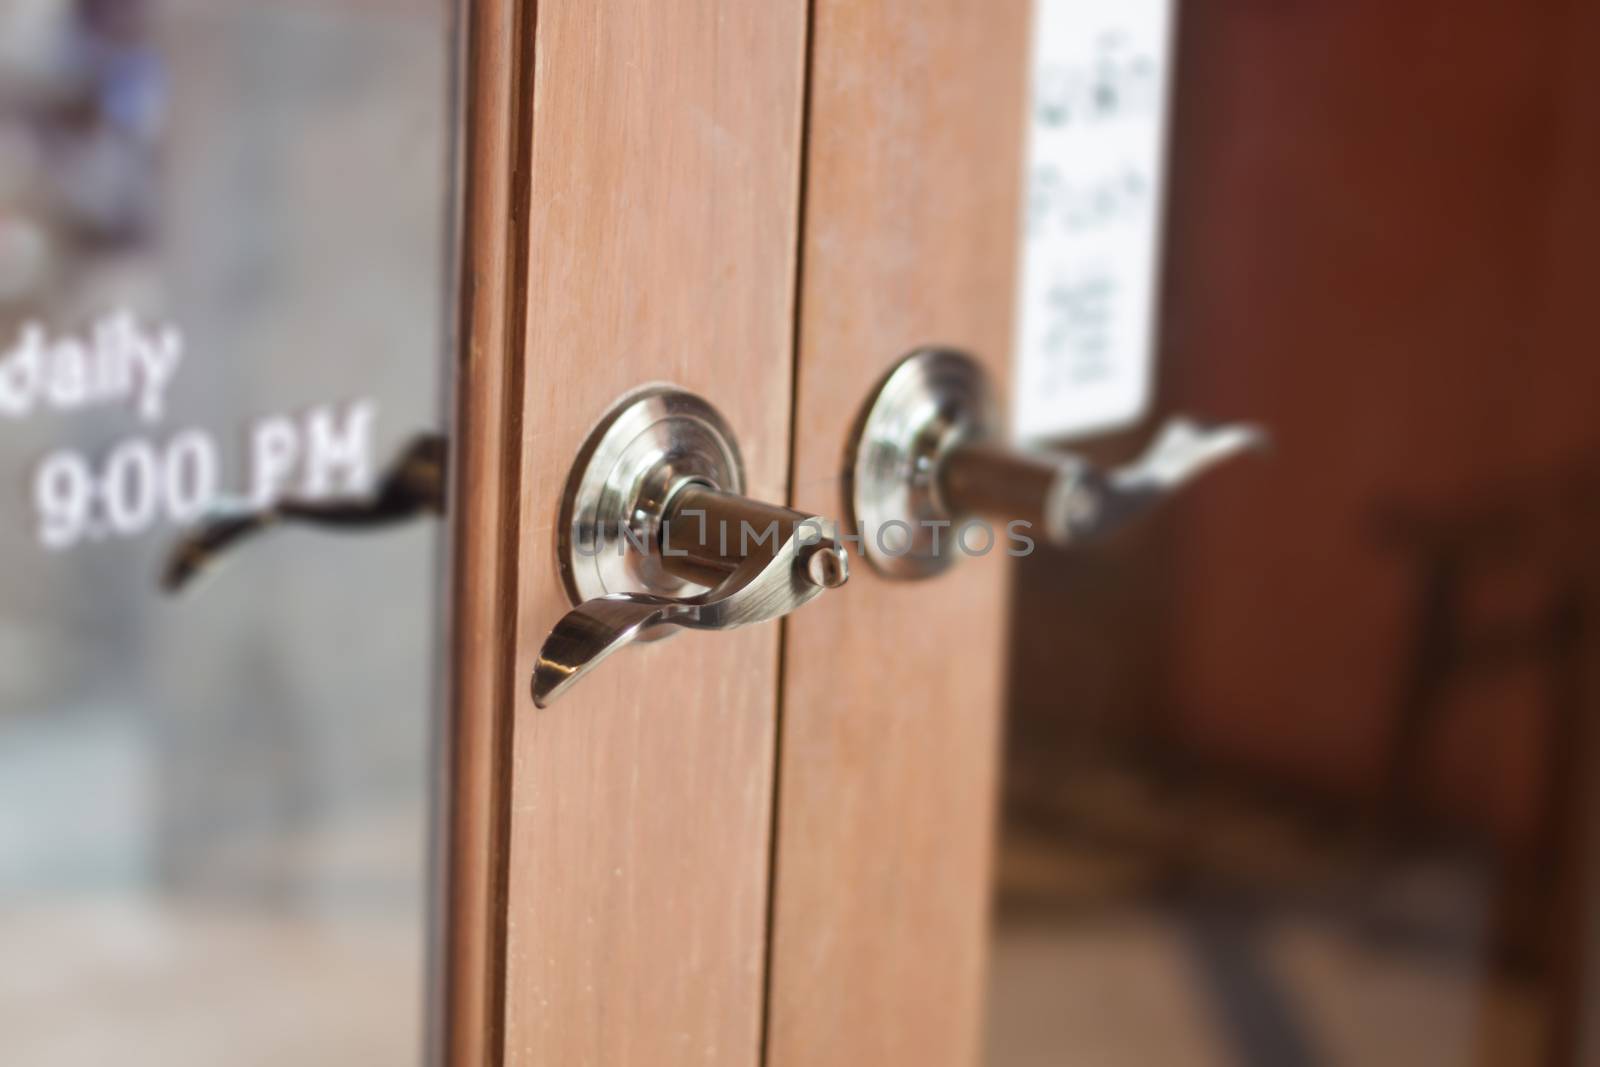 Metal door handles on wardrobe doors, stock photo